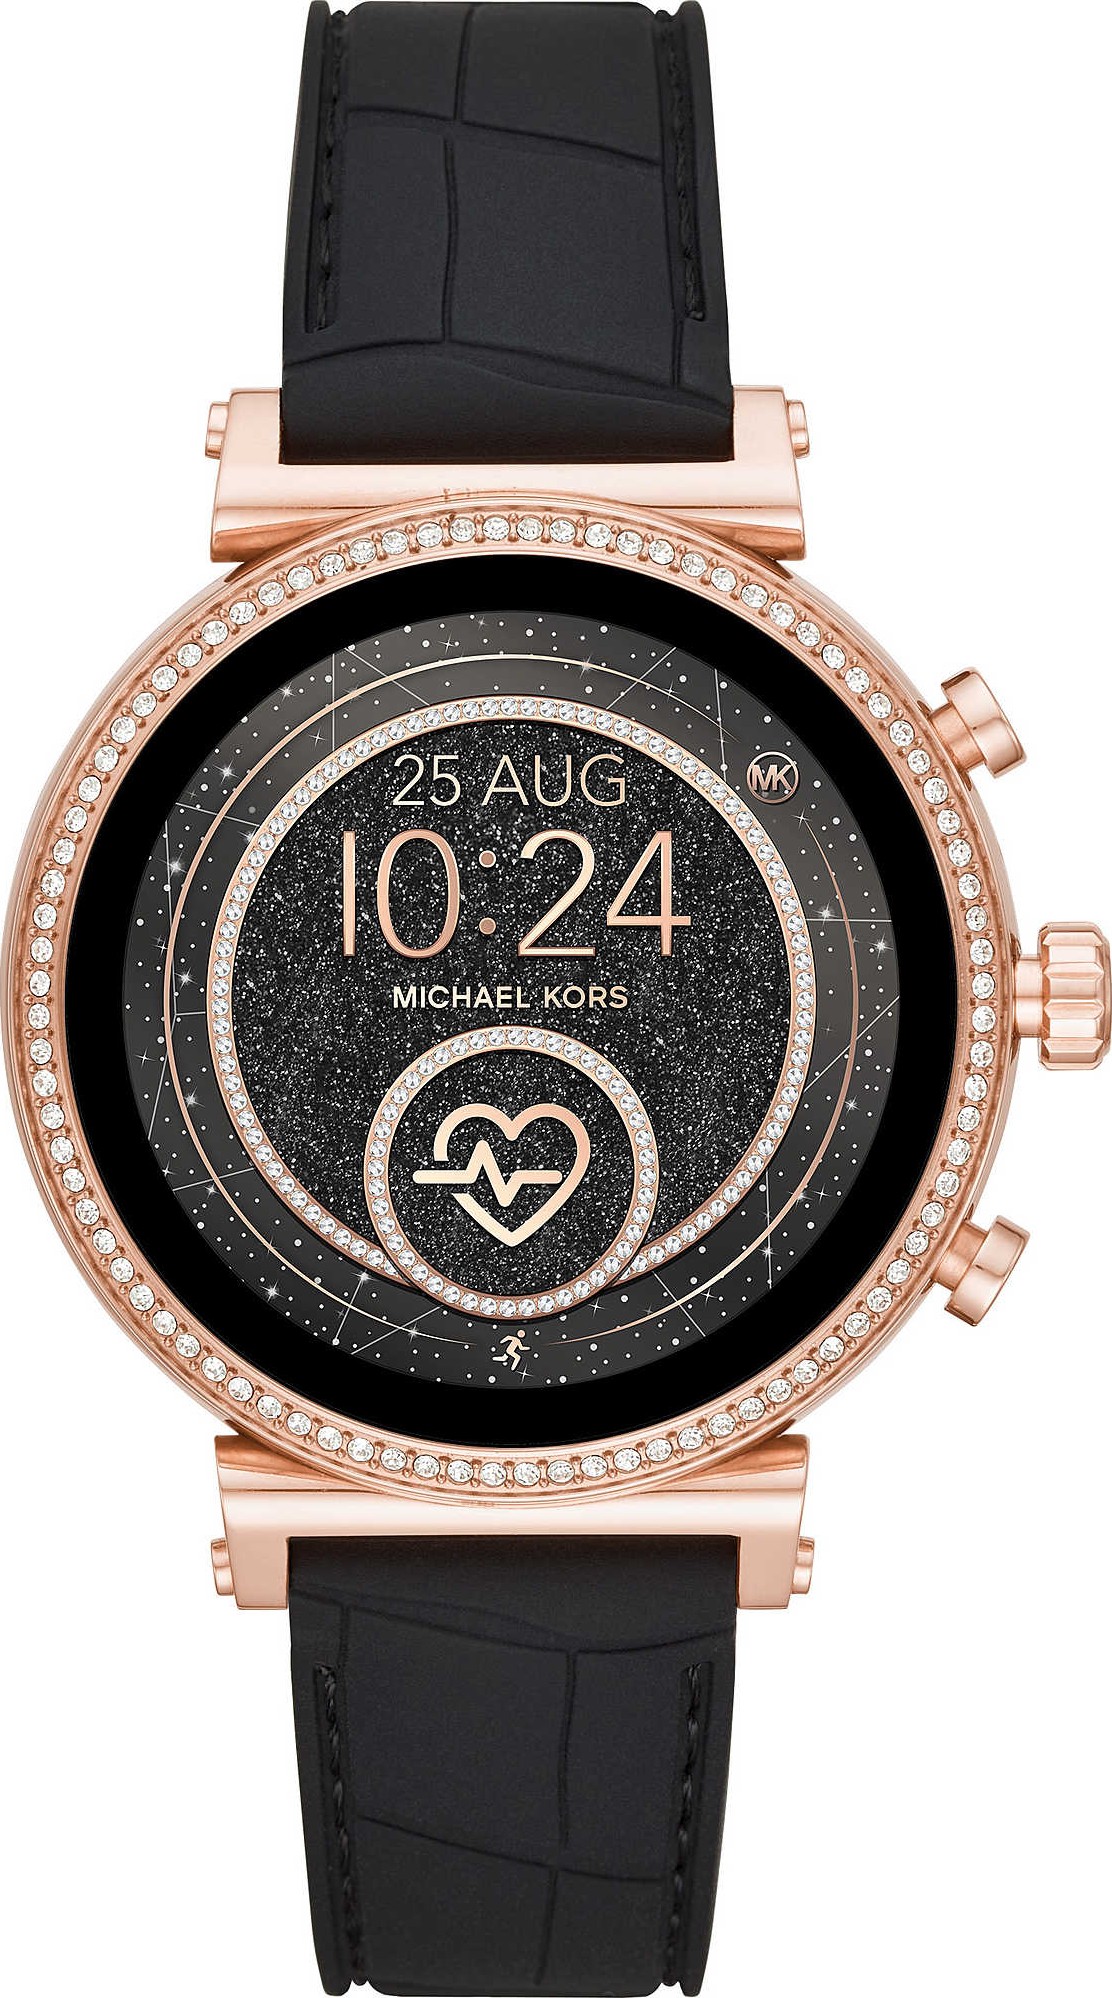 Michael Kors ra mắt đồng hồ thông minh mang tên Access dành cho cả nam và nữ